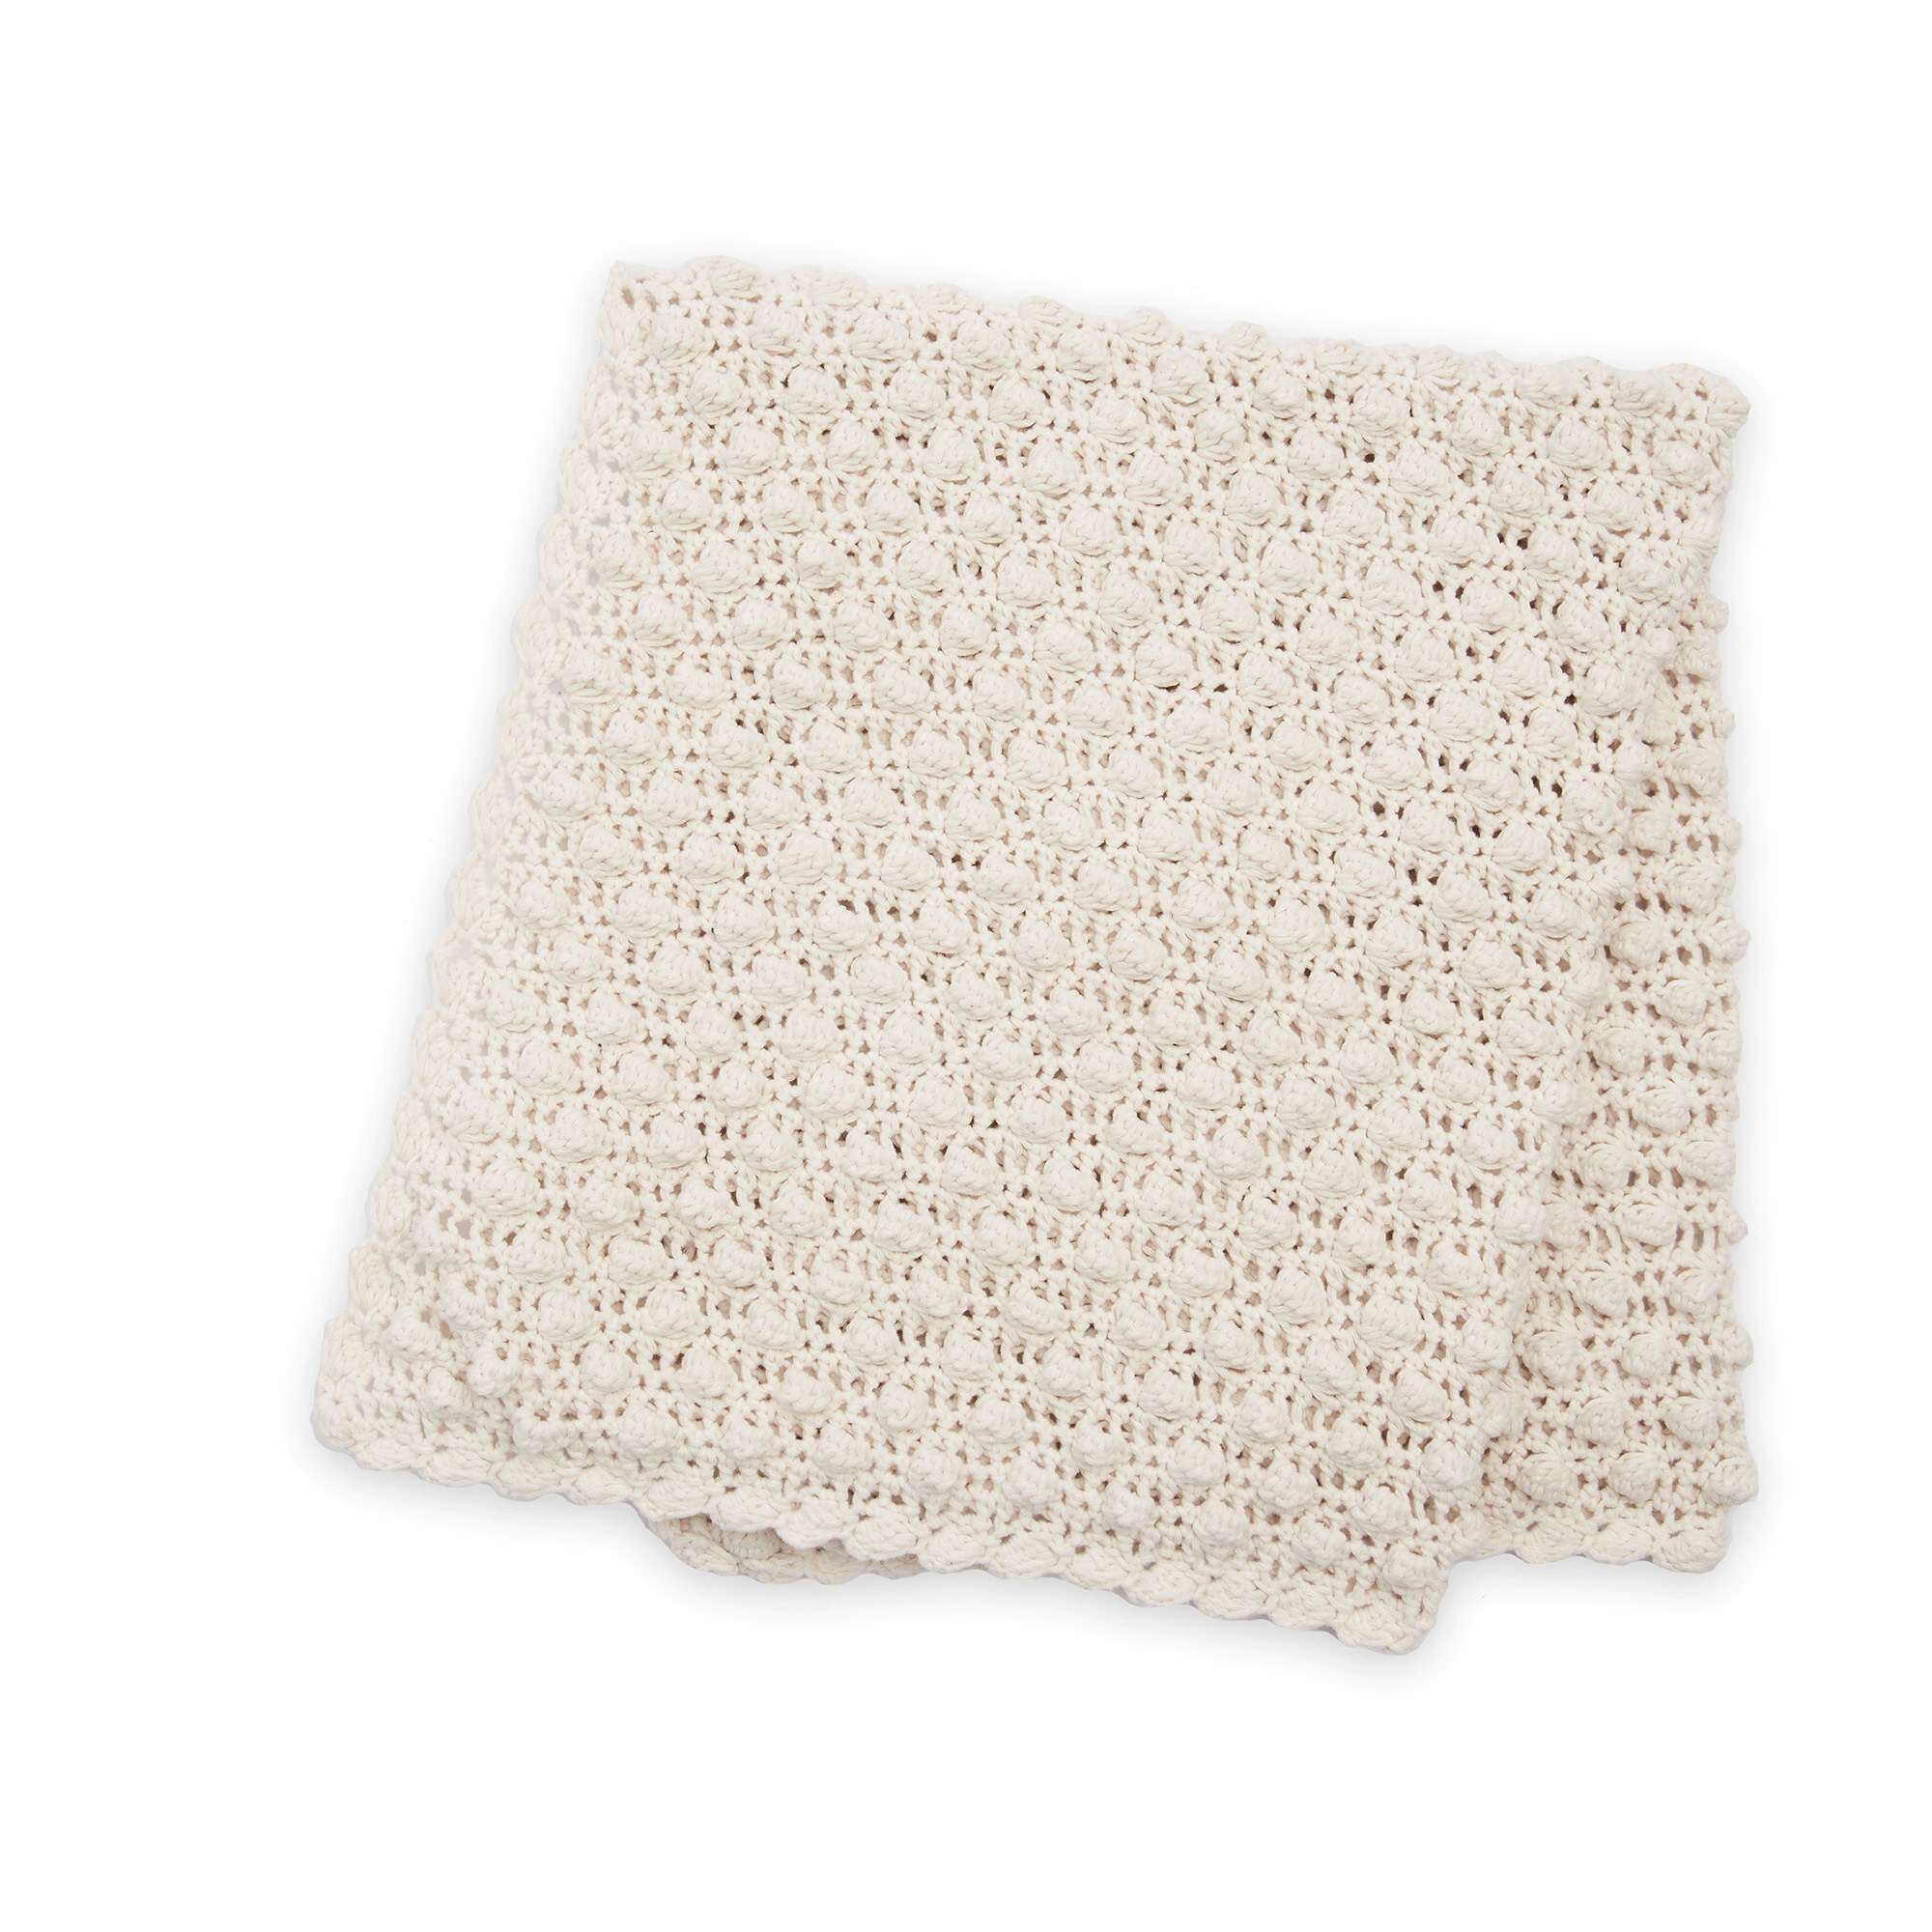 All About Bernat Blanket Yarn (plus 26 free Crochet Patterns) - Easy  Crochet Patterns